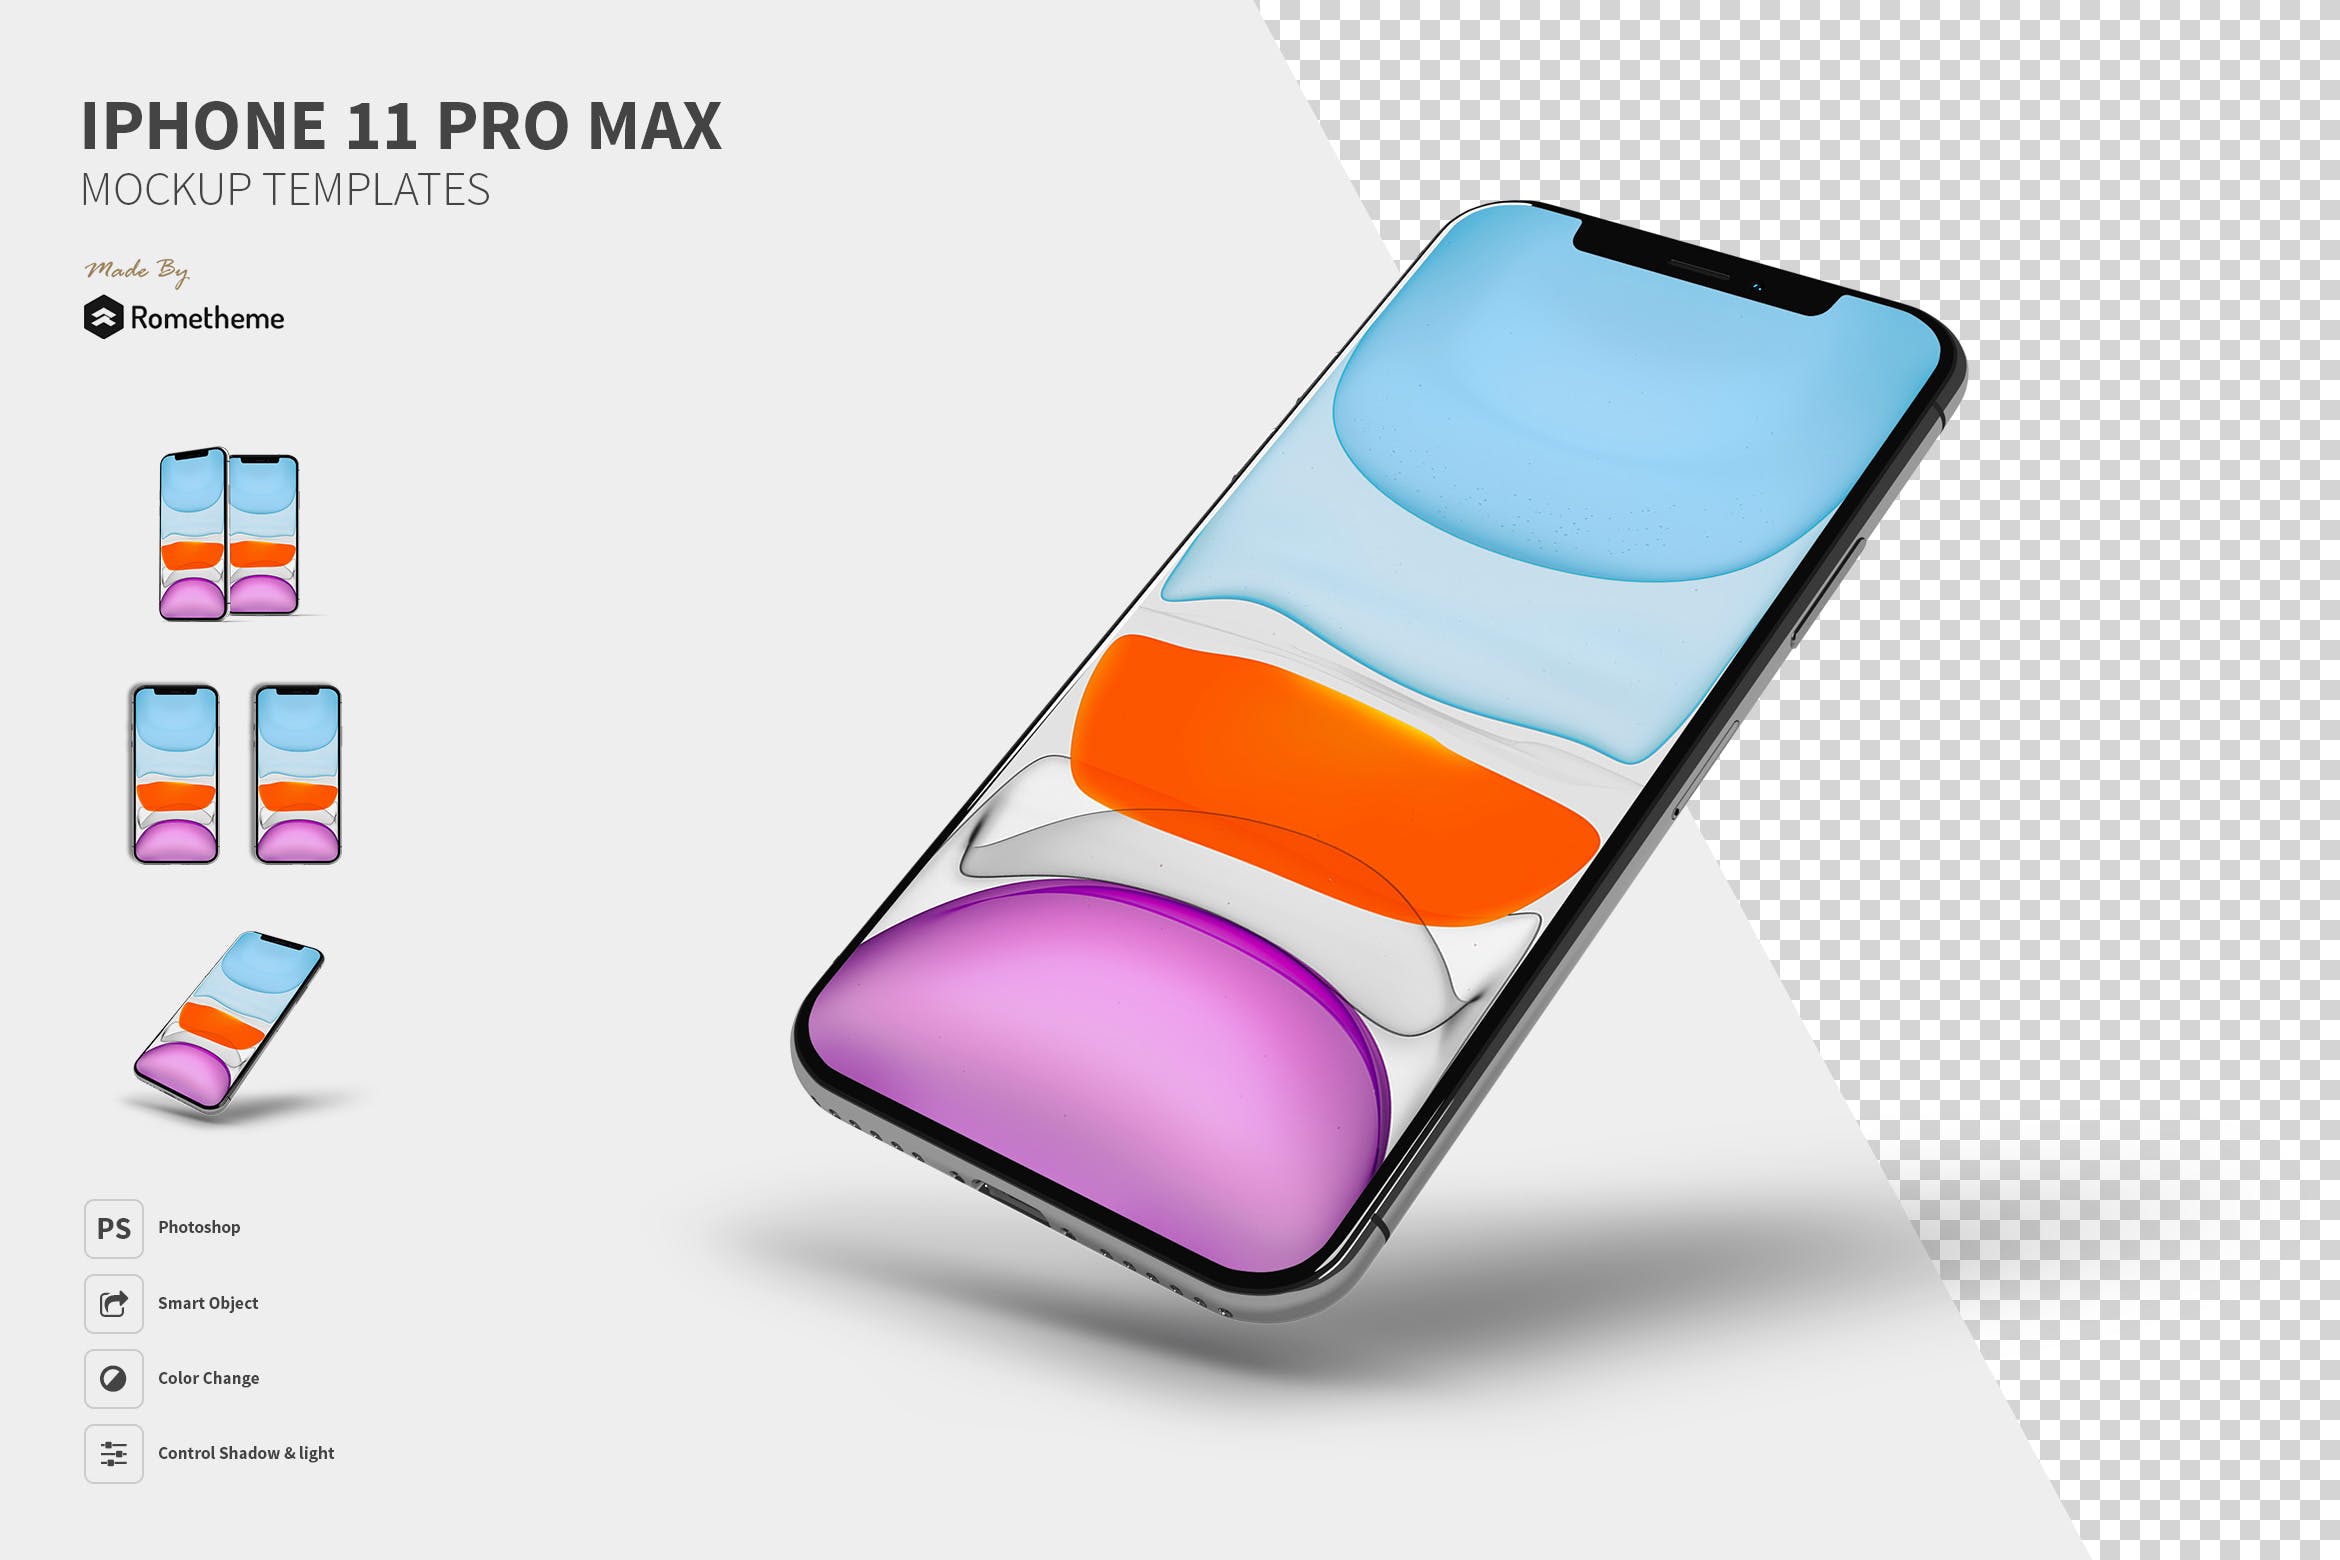 2019苹果旗舰手机iPhone 11 Pro Max第一素材精选样机模板 iPhone 11 Pro Max Mockups YR插图